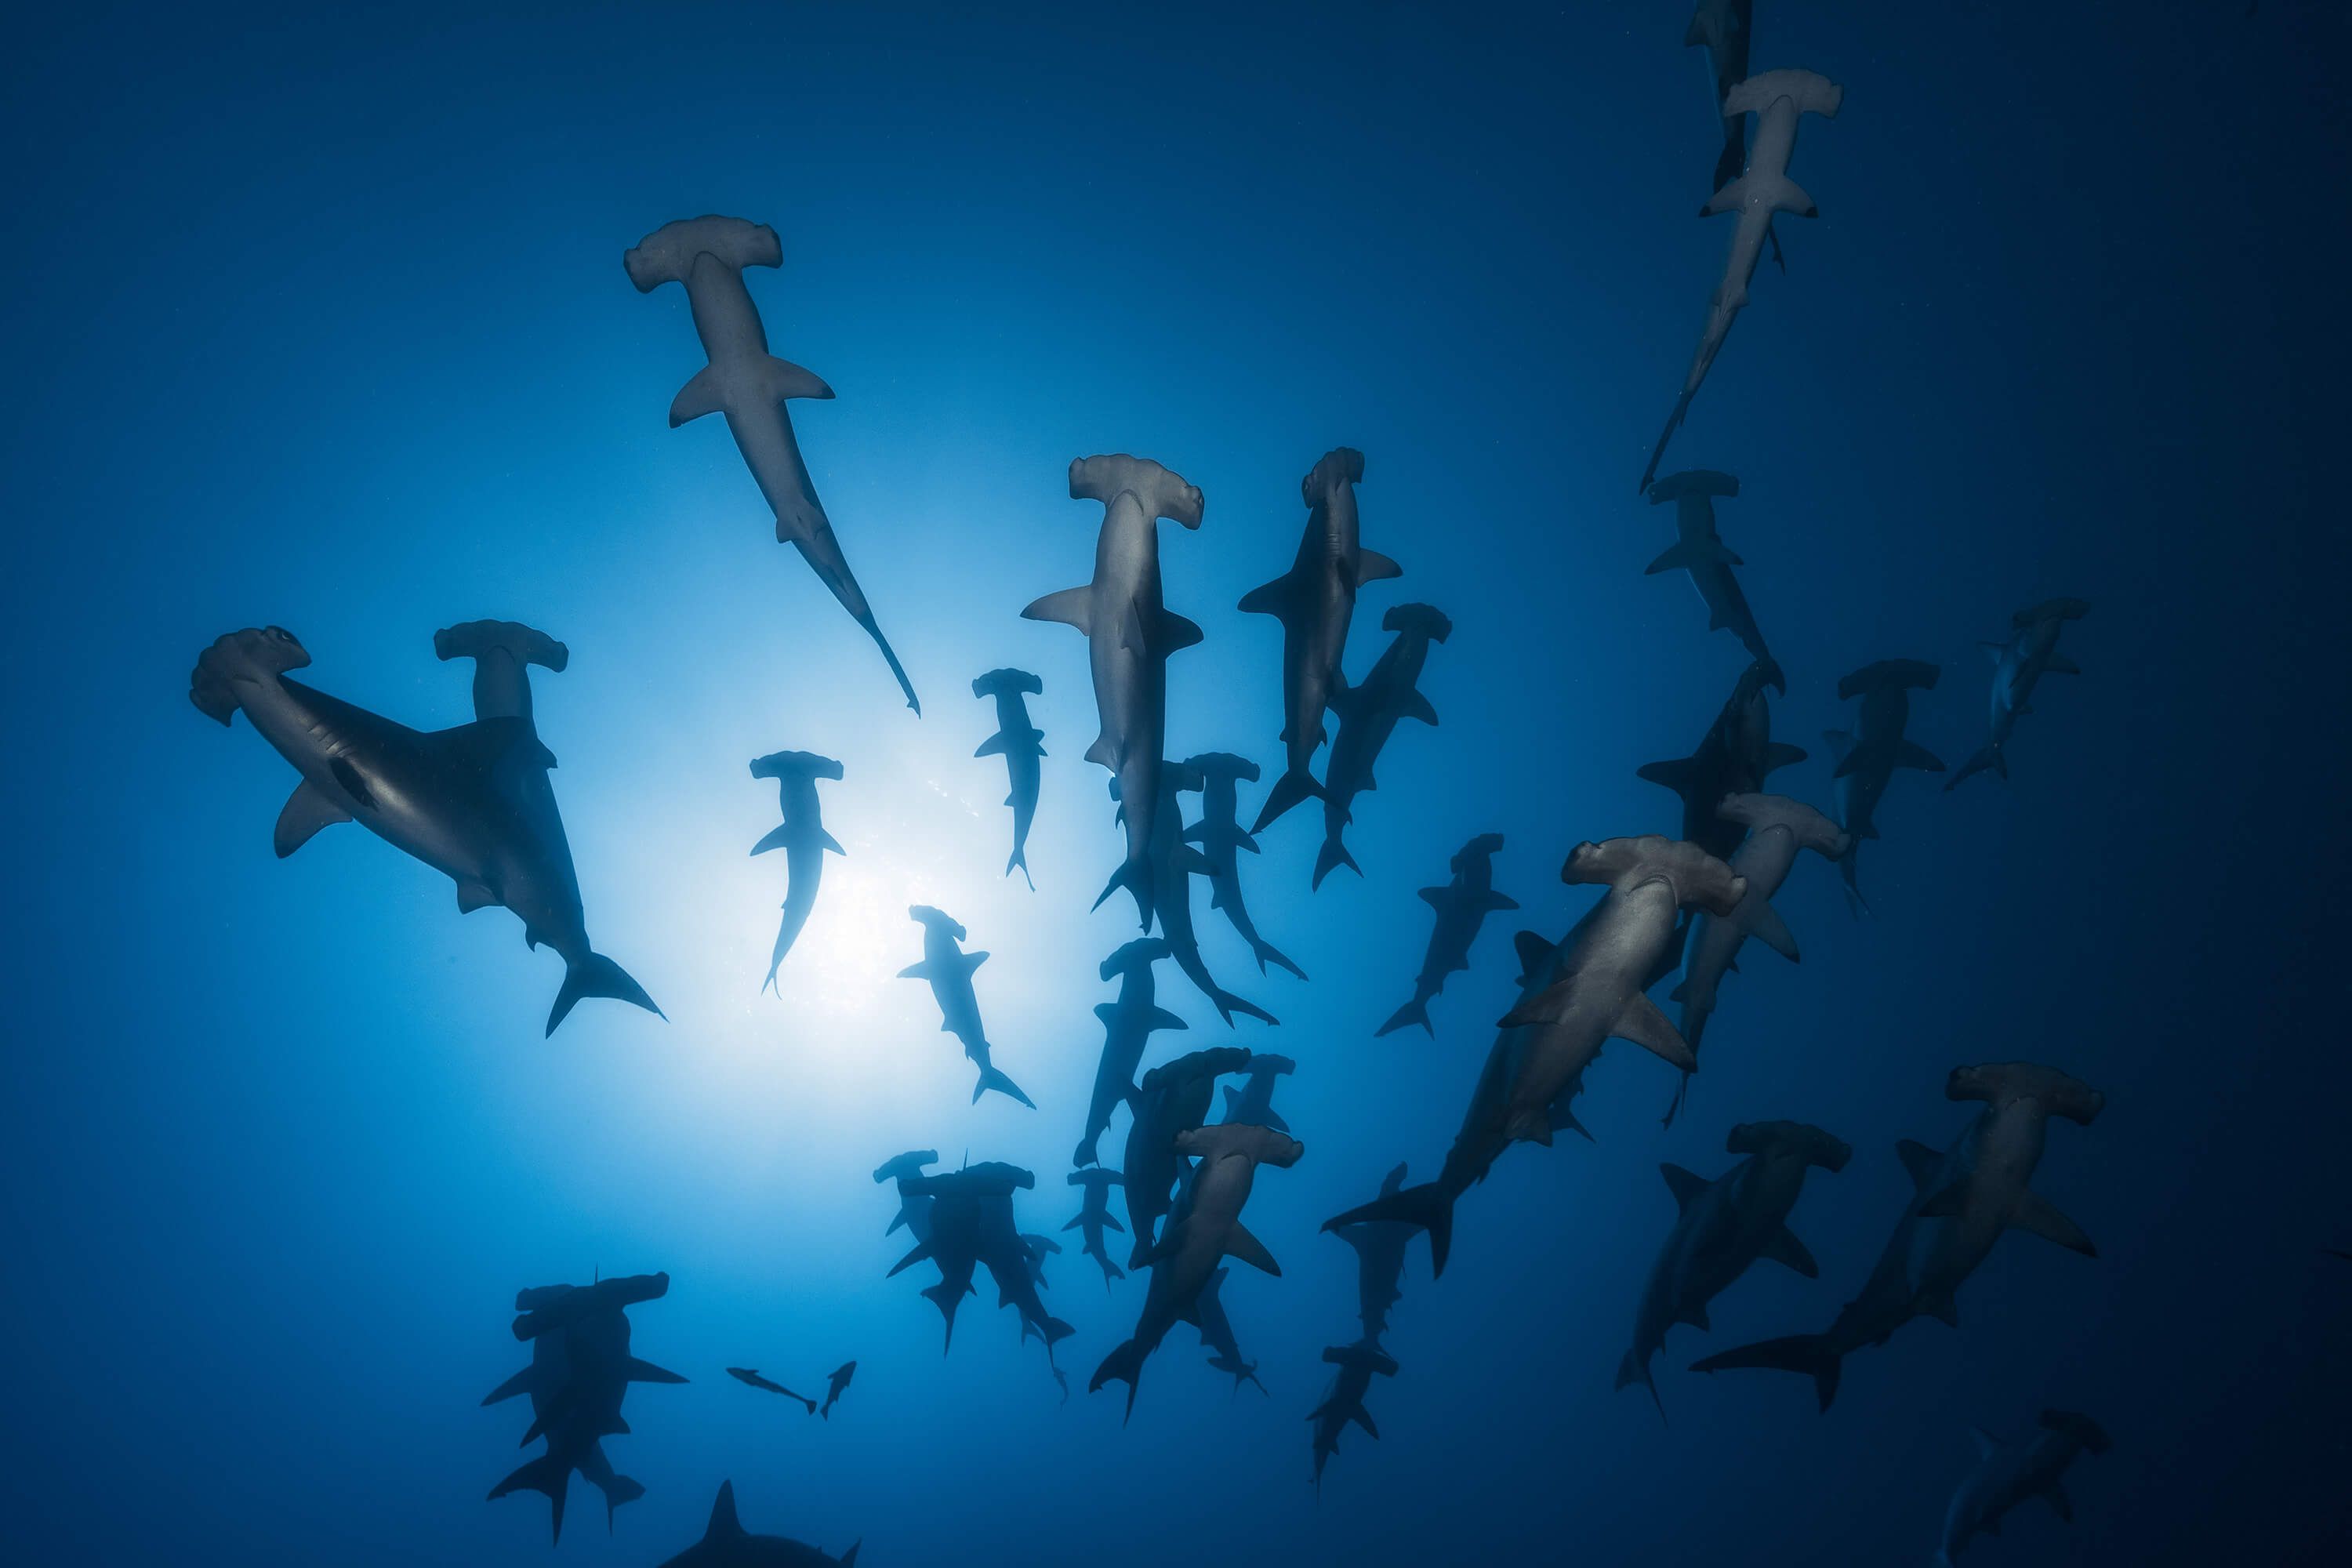 Underwater Papel pintado con Tiburón martillo - Fotografía submarina - Habitación de adolescentes